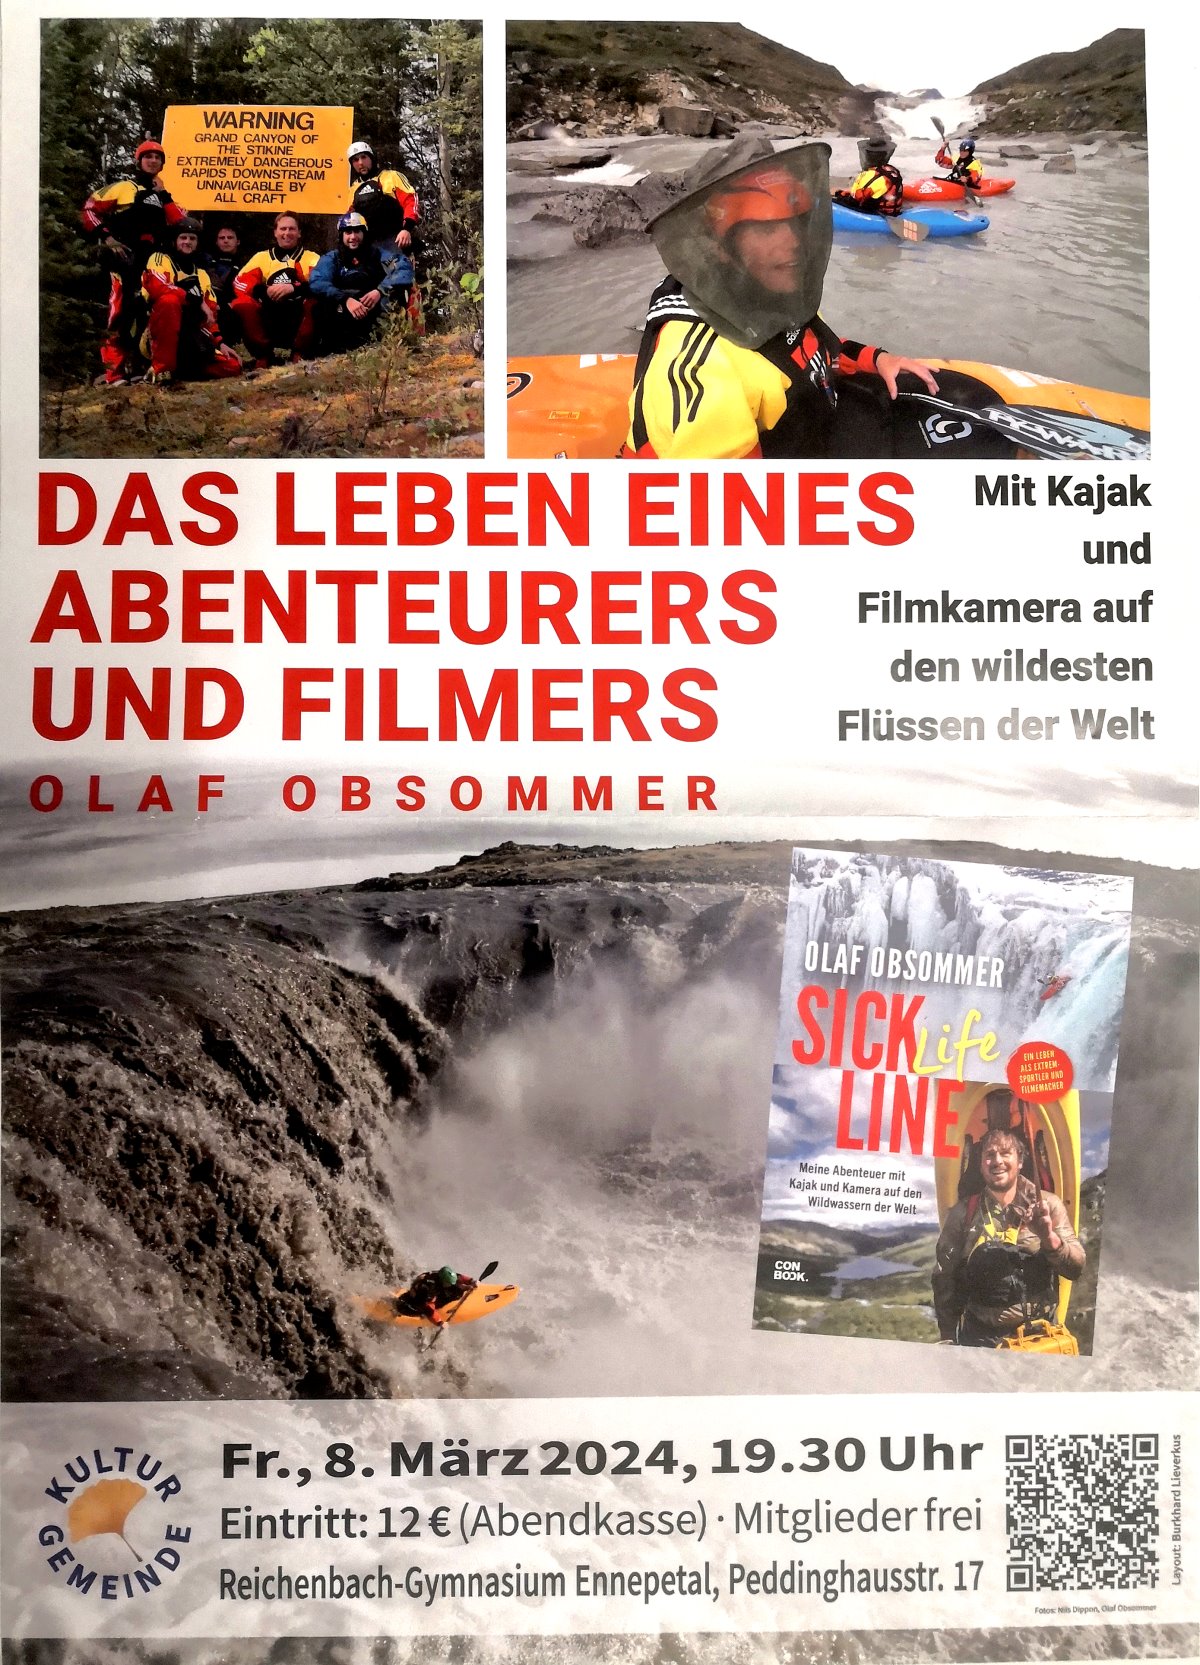 Olaf Obsommer - mit dem Kajak auf den wildesten Flüssen der Welt